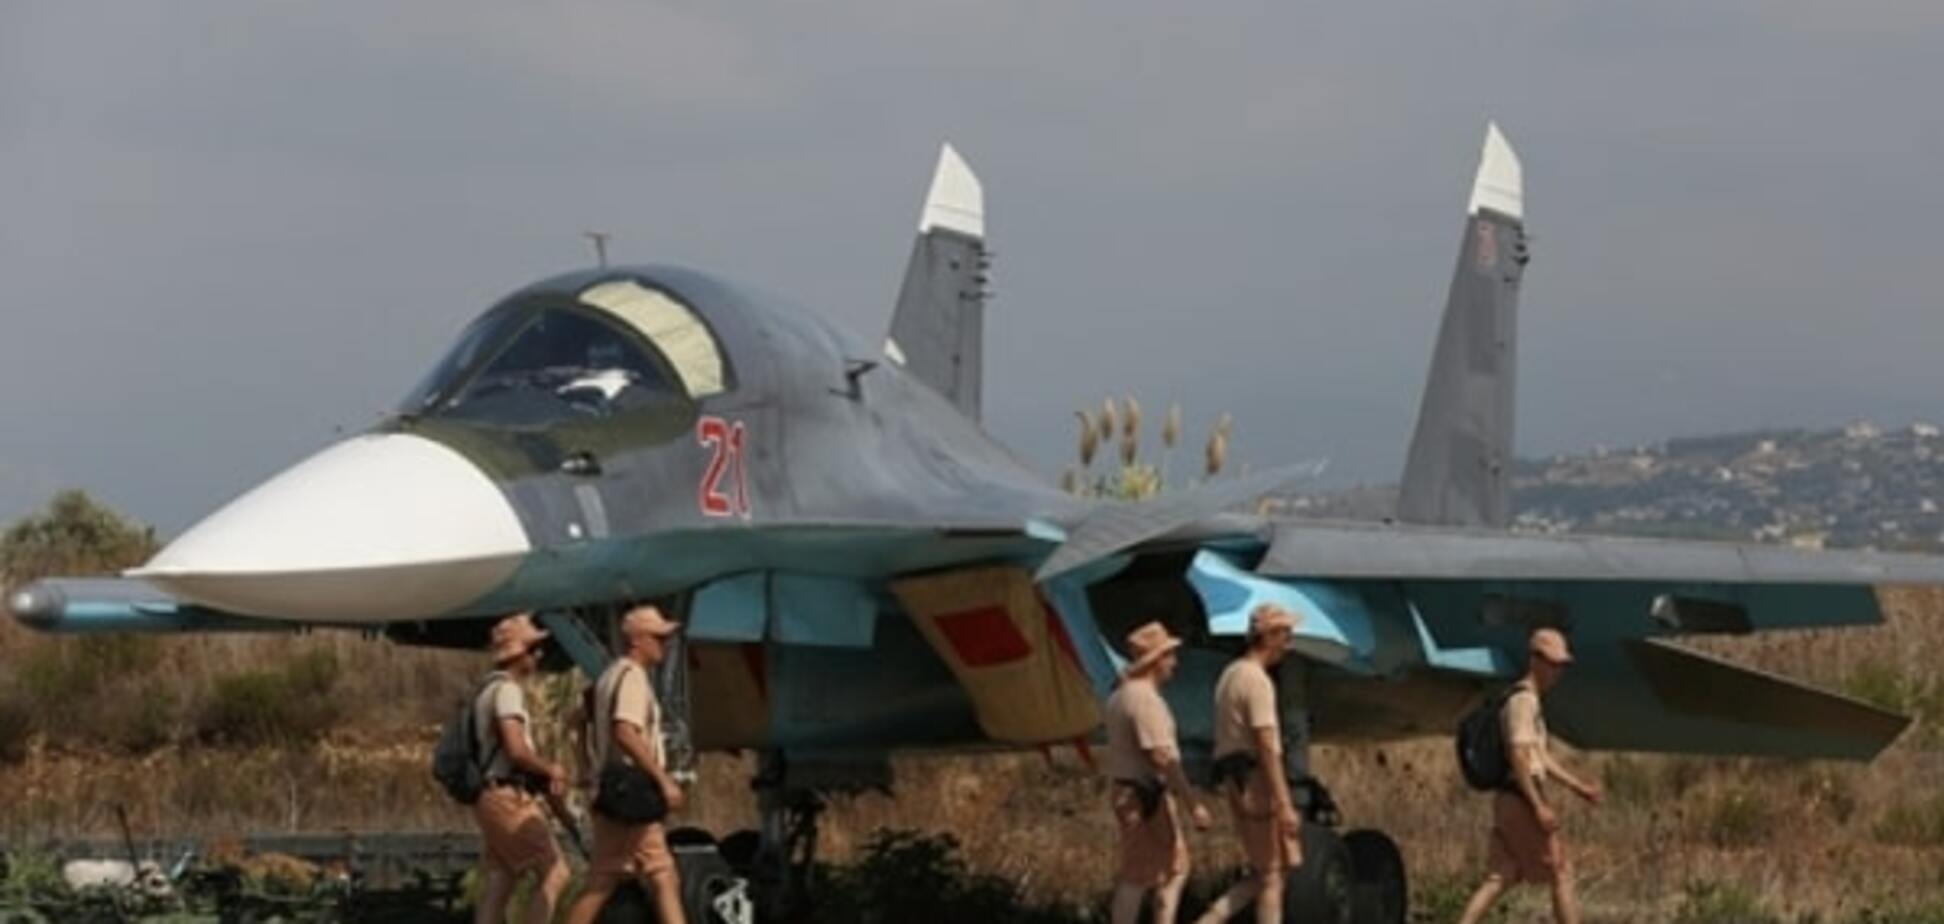 Вежливые пилоты: Минобороны России похвасталось авиабазой в Сирии. Фоторепортаж